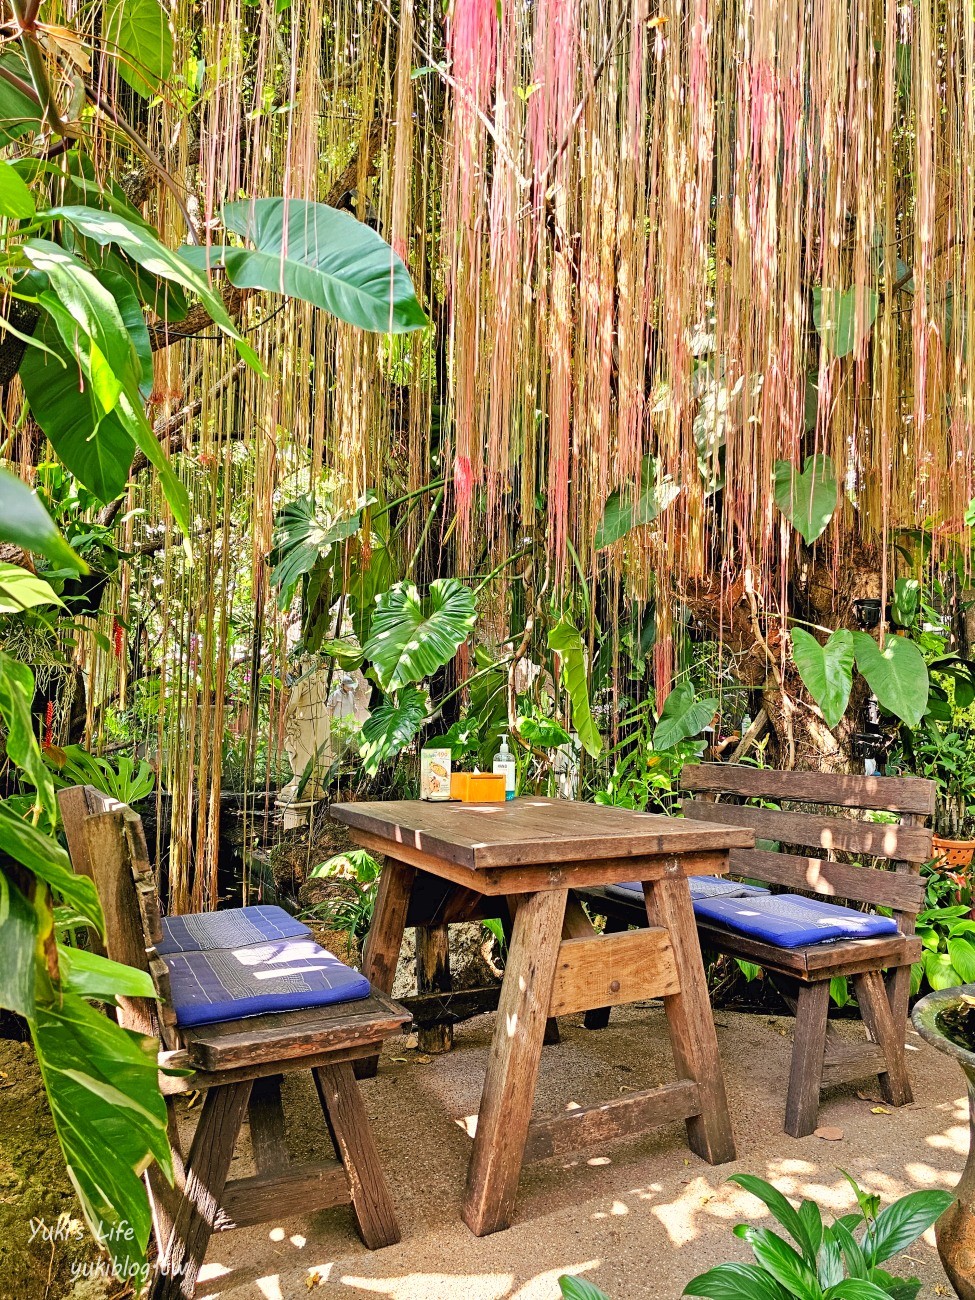 曼谷網美咖啡廳【Baan Suan Sathon】超浪漫森林系雨林風格~來當仙女 - yuki.tw